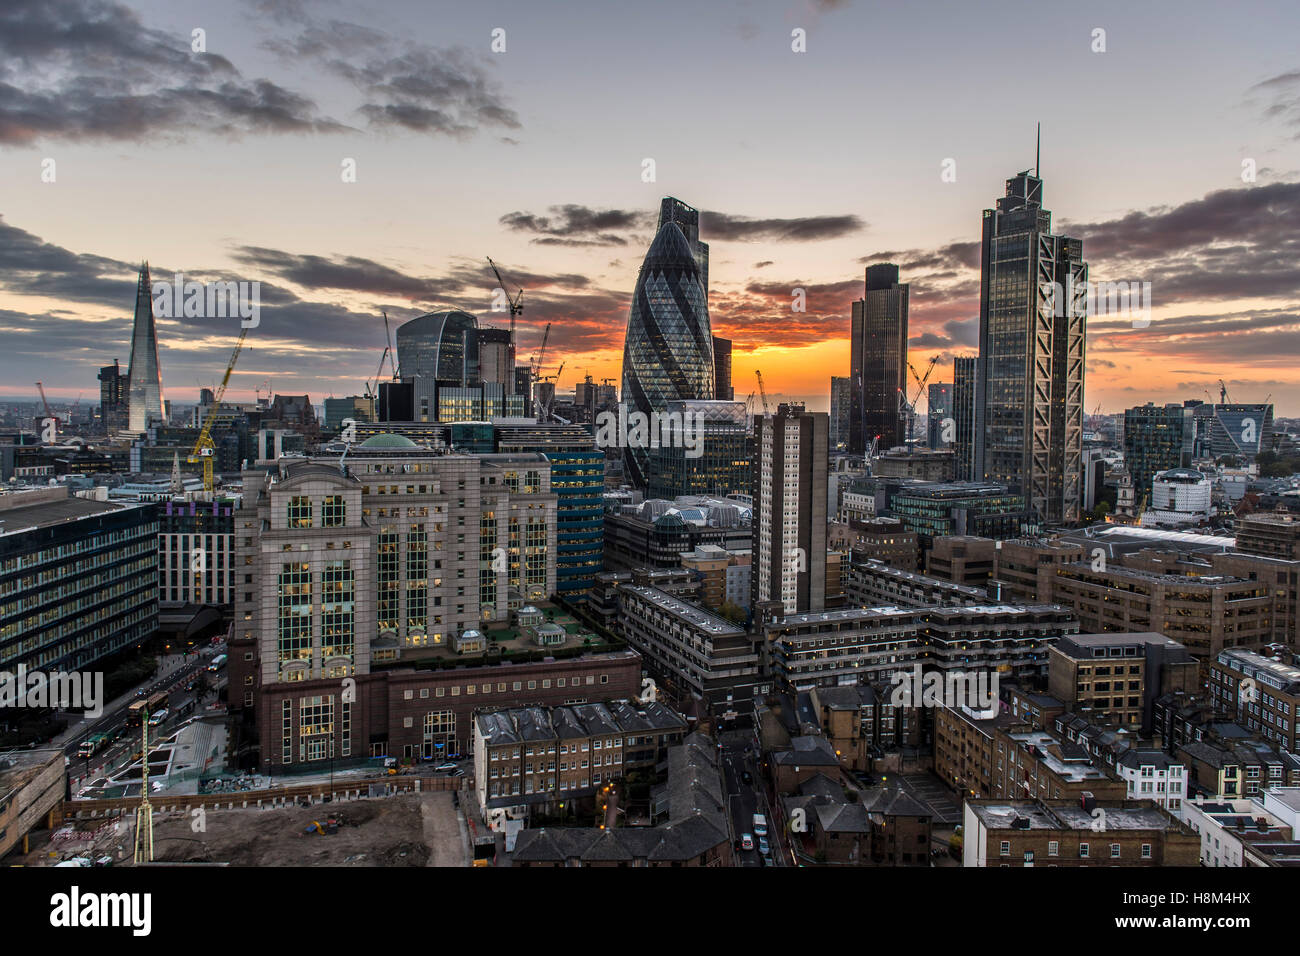 Un horizonte de Londres, paisaje urbano, de gran altura, rascacielos, el pepinillo, Torre 42, Heron Tower, noche, atardecer, centro financiero de la ciudad Foto de stock